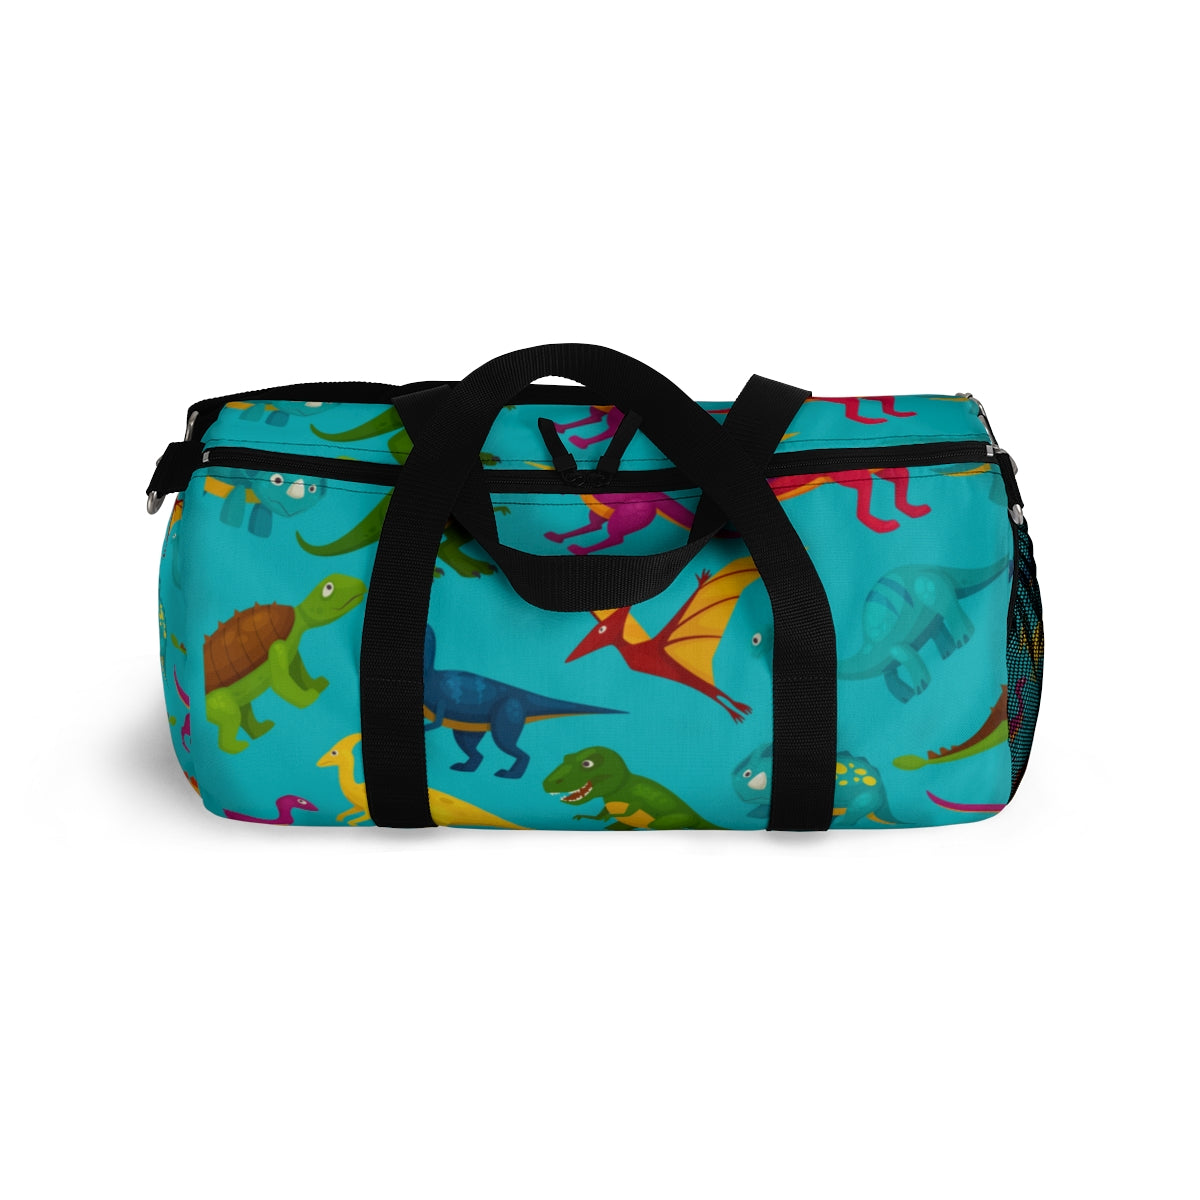 Kids Dinosaurs Duffle Bag Travel Weekender Gym Luggage